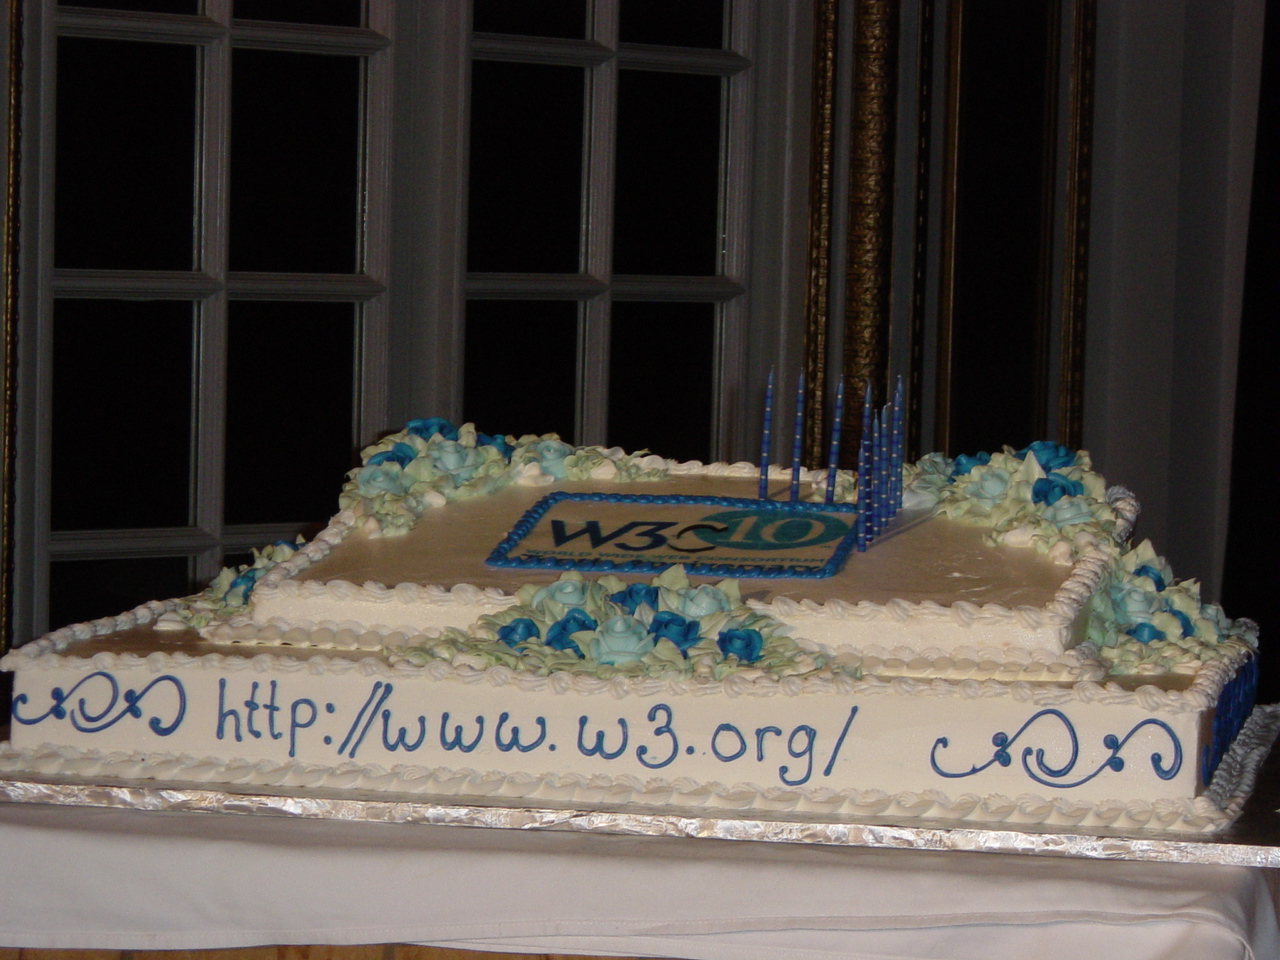 La torta per il decennale del W3C - dicembre 2004